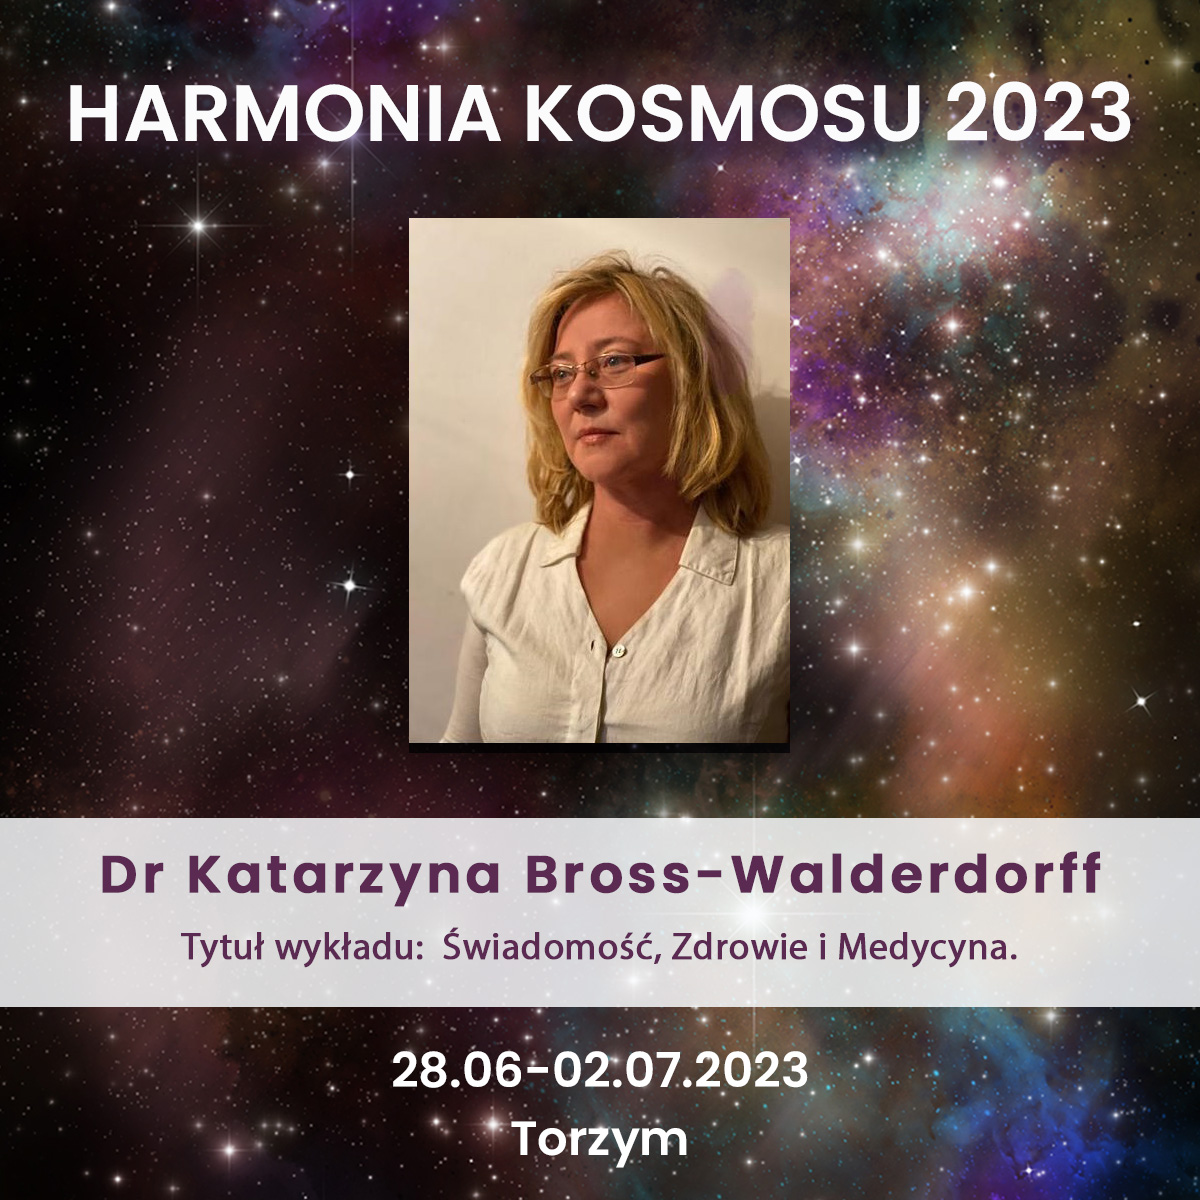 Dr Katarzyna Bross-Walderdorff